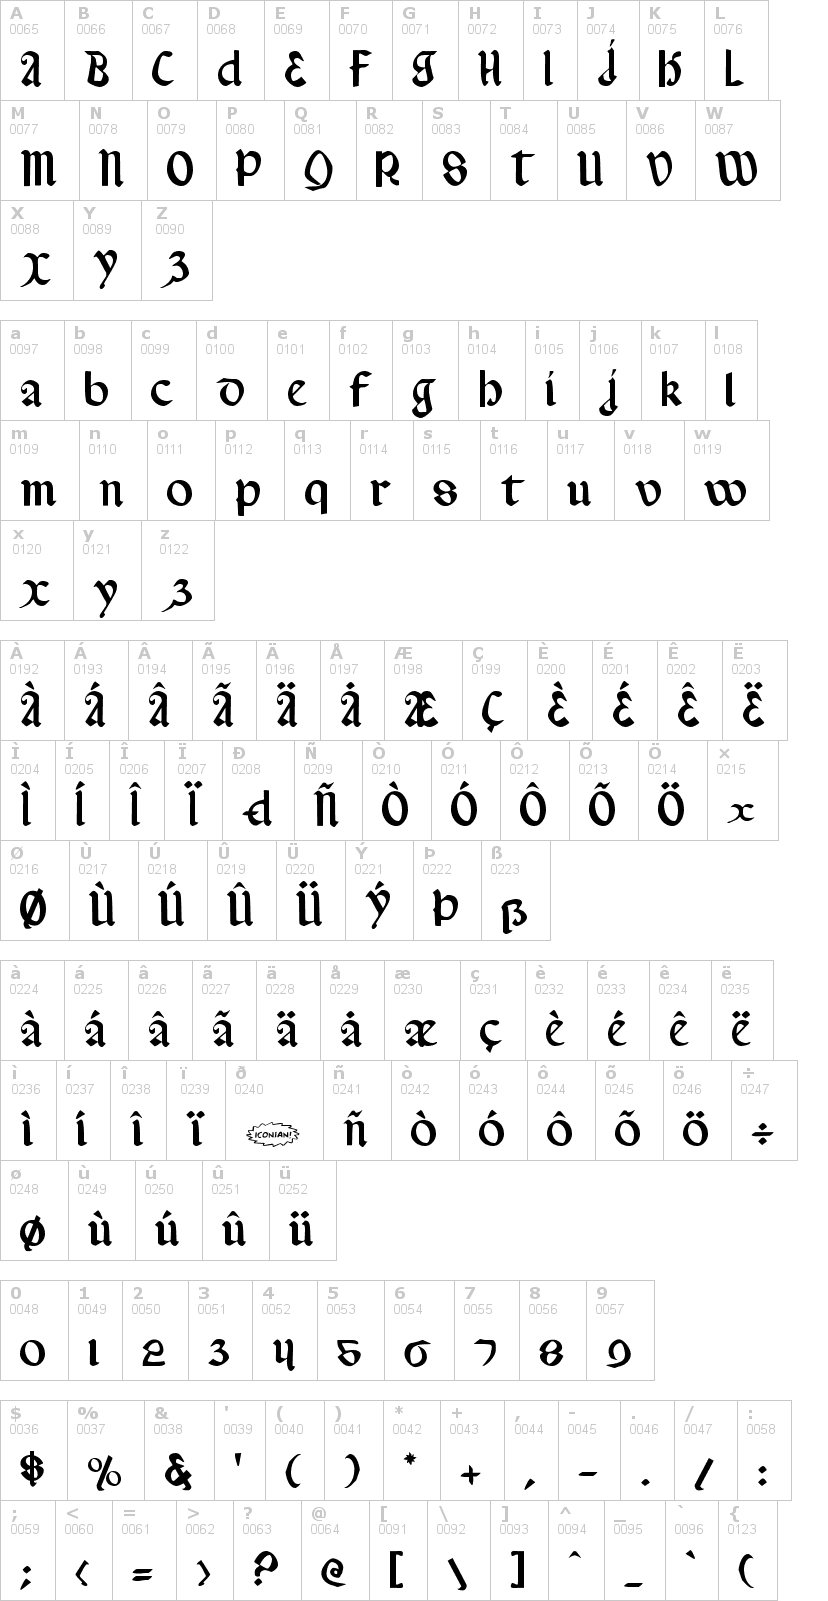 Lettere dell'alfabeto del font valerius con le quali è possibile realizzare adesivi prespaziati